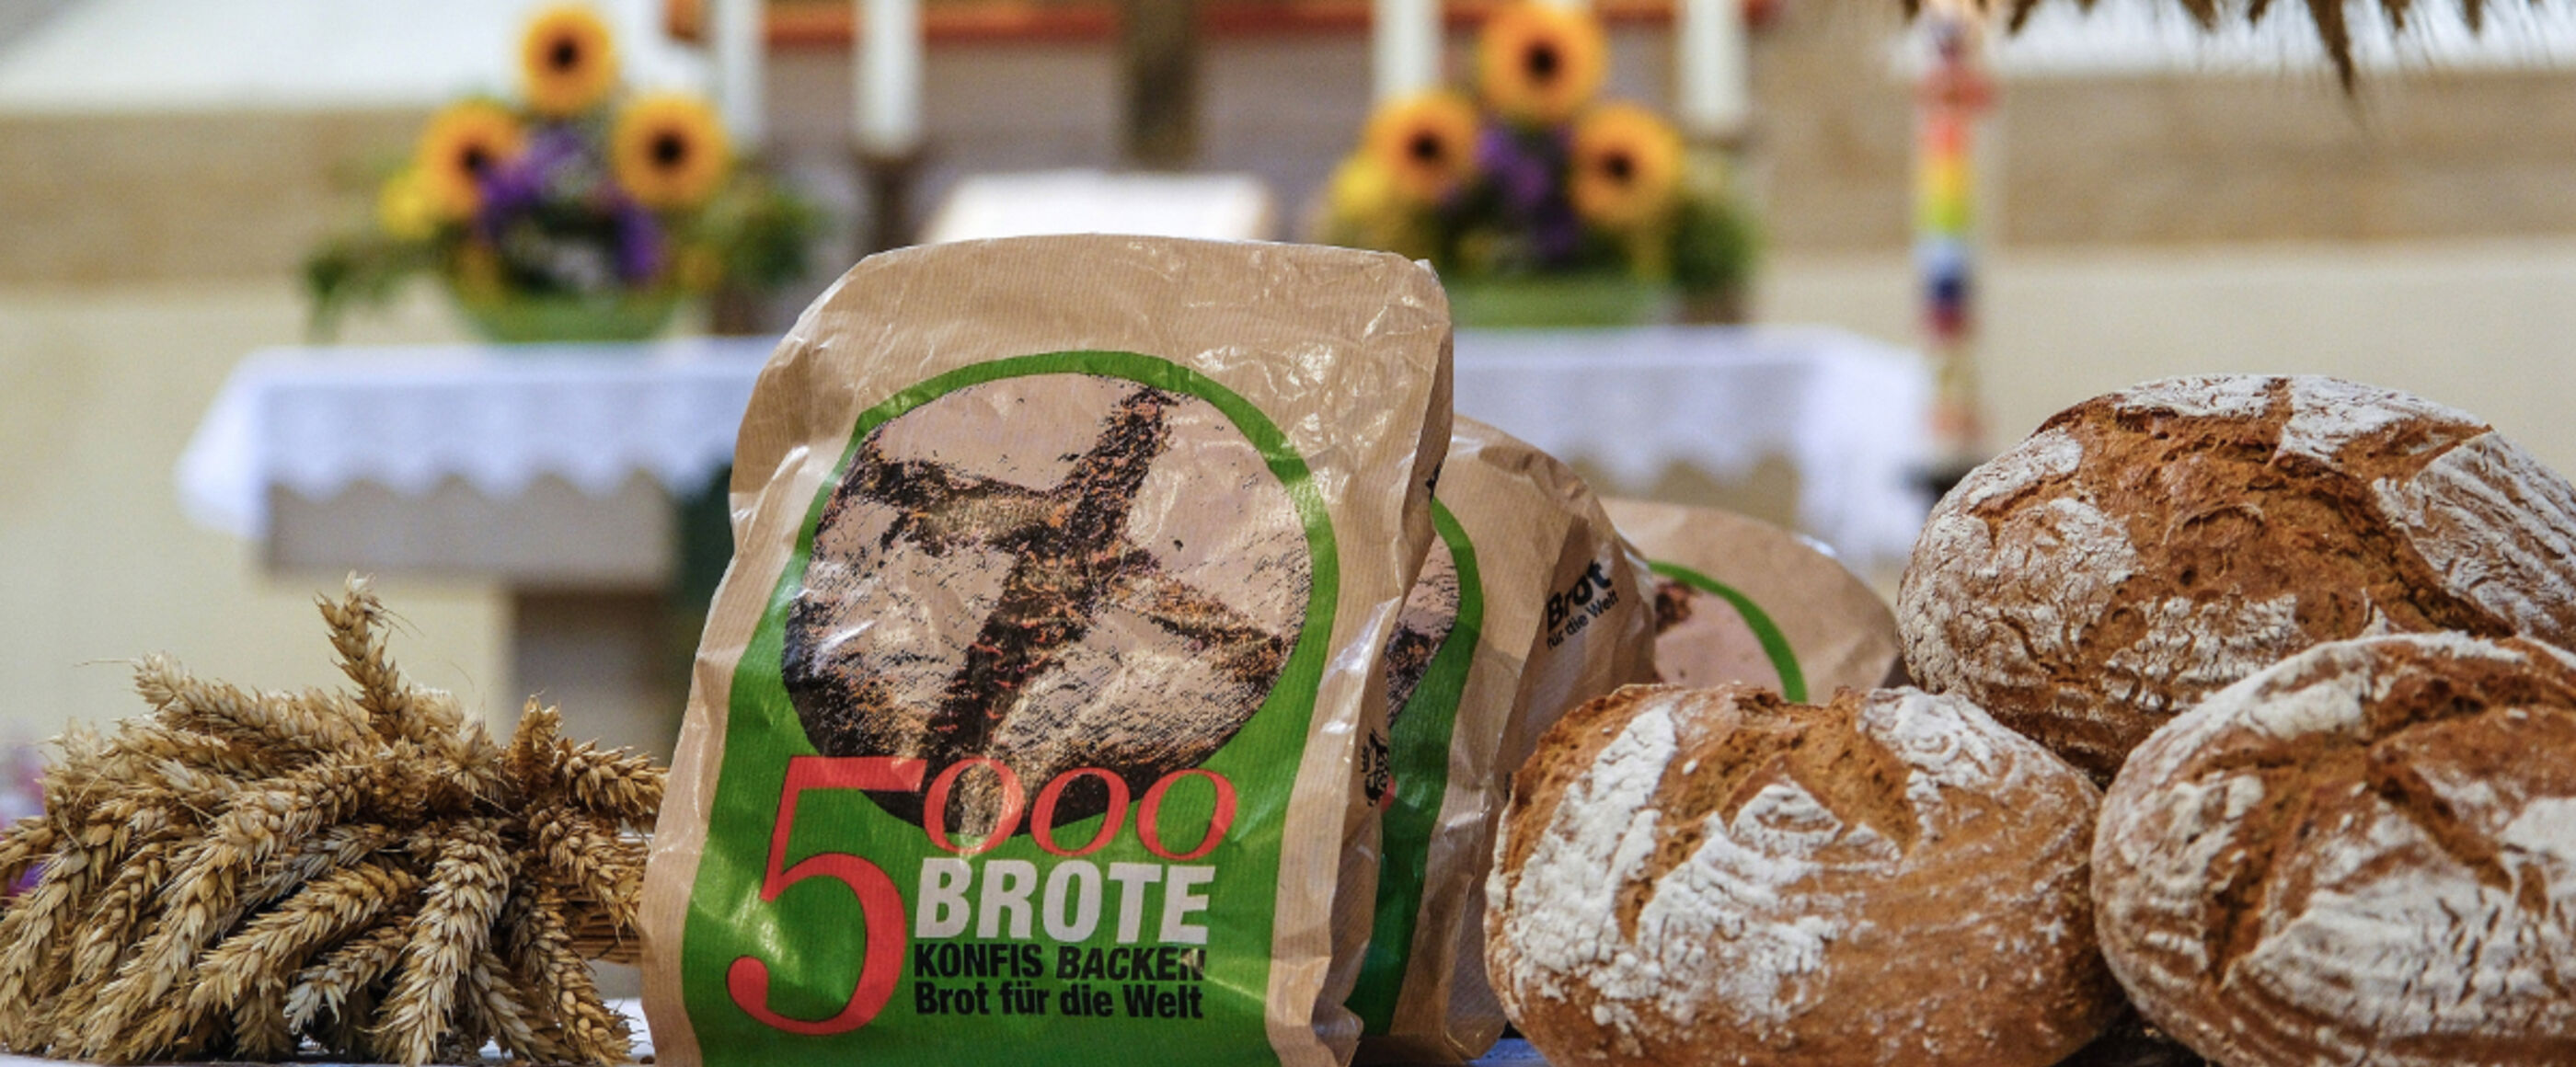 Man sieht frisch gebackene Brote. Sie liegen vor einem Altar in der Kirche. Die Kirche ist für das Erntedankfest geschmücke. In der Mitte der Brote stehen Brottüten mit dem Aufdruck: 5000 Brote - Konfis backen für Brot für die Welt.